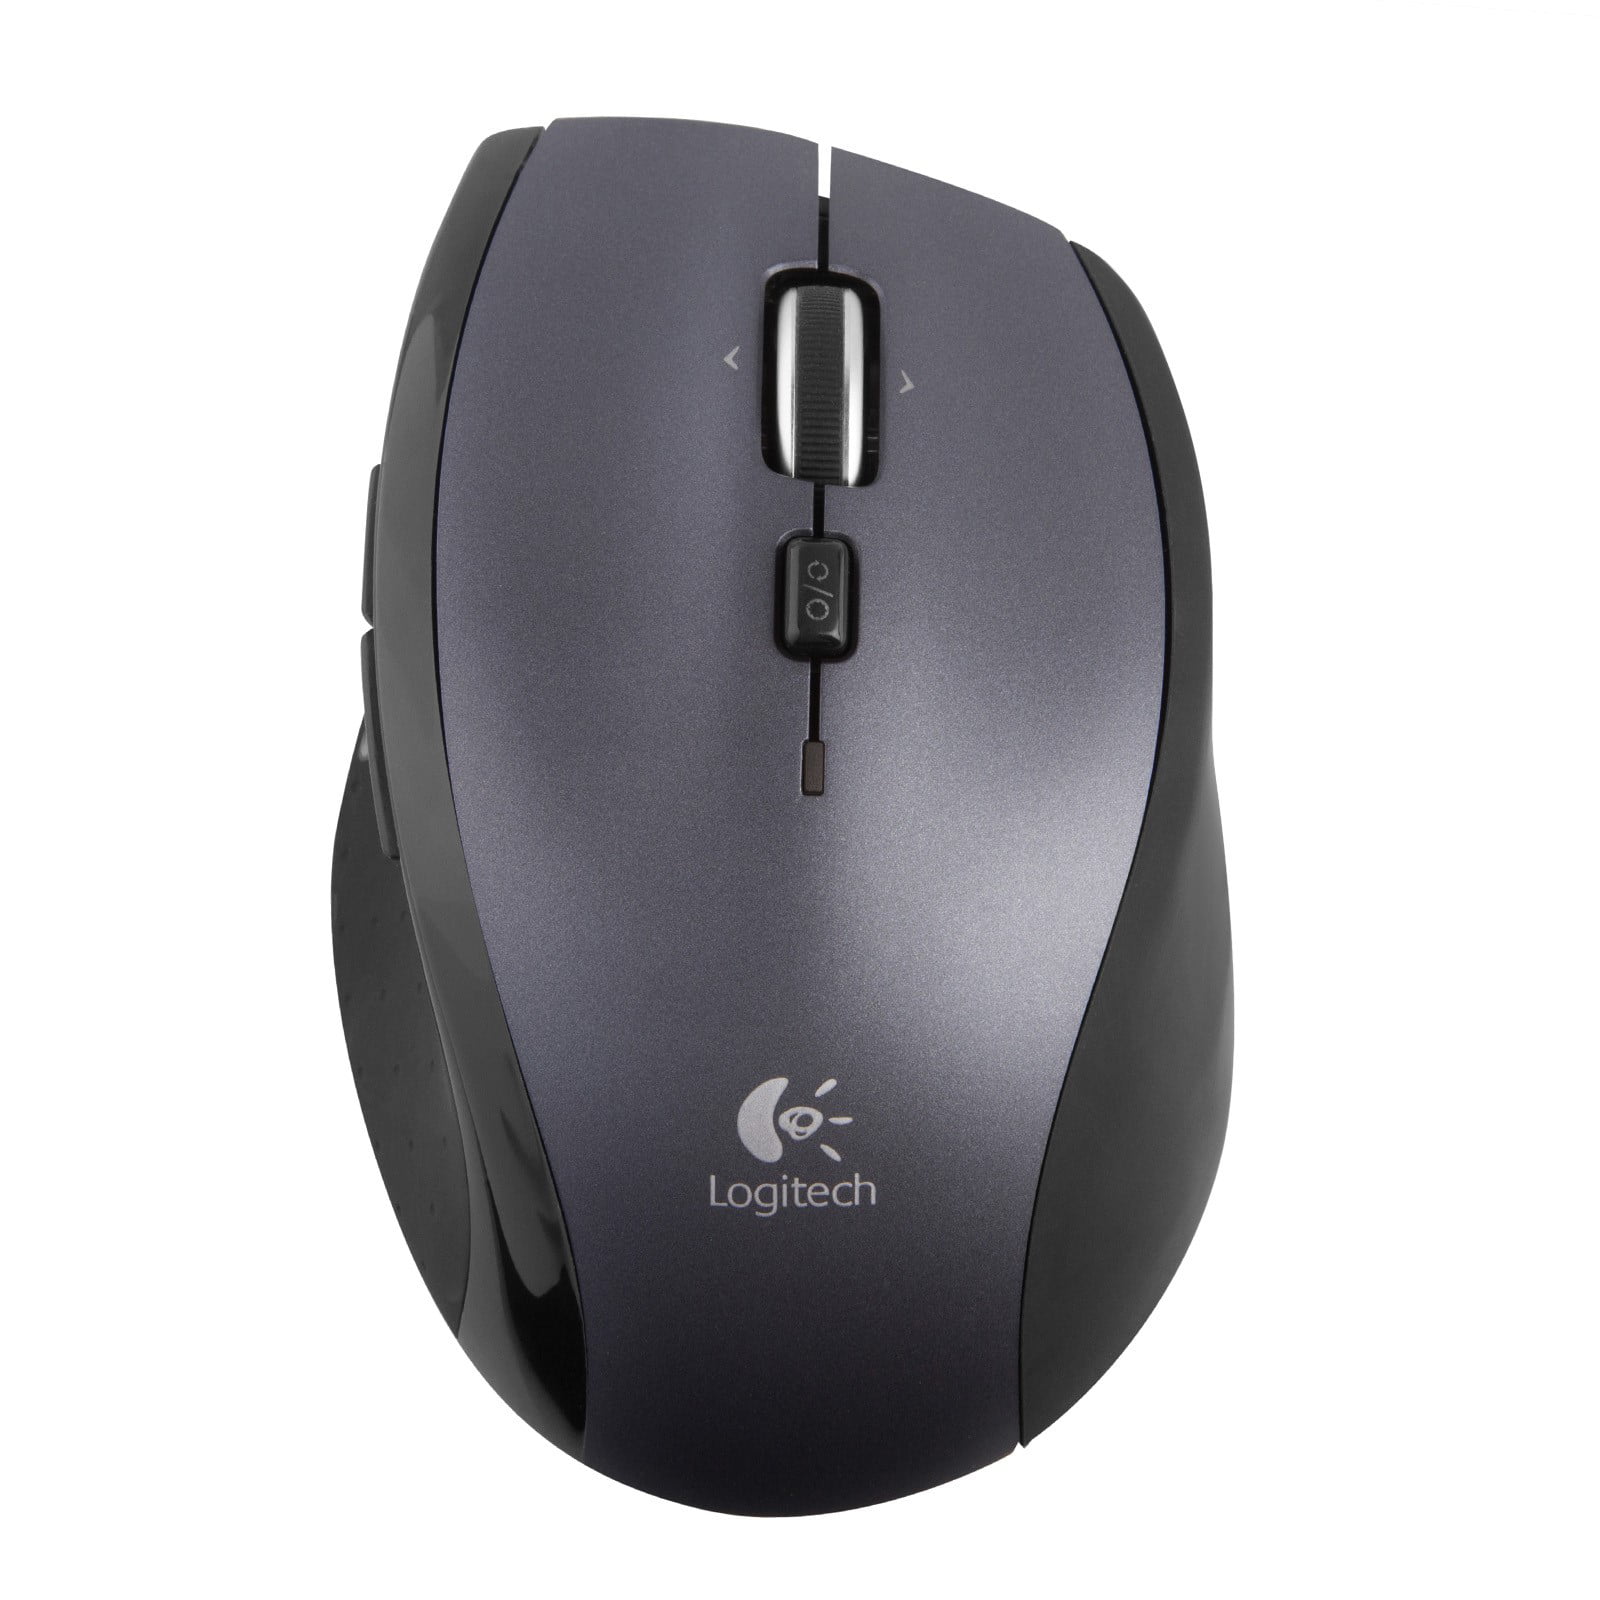 Logitech Marathon Mouse M705 (Argent) - Souris PC - Garantie 3 ans LDLC